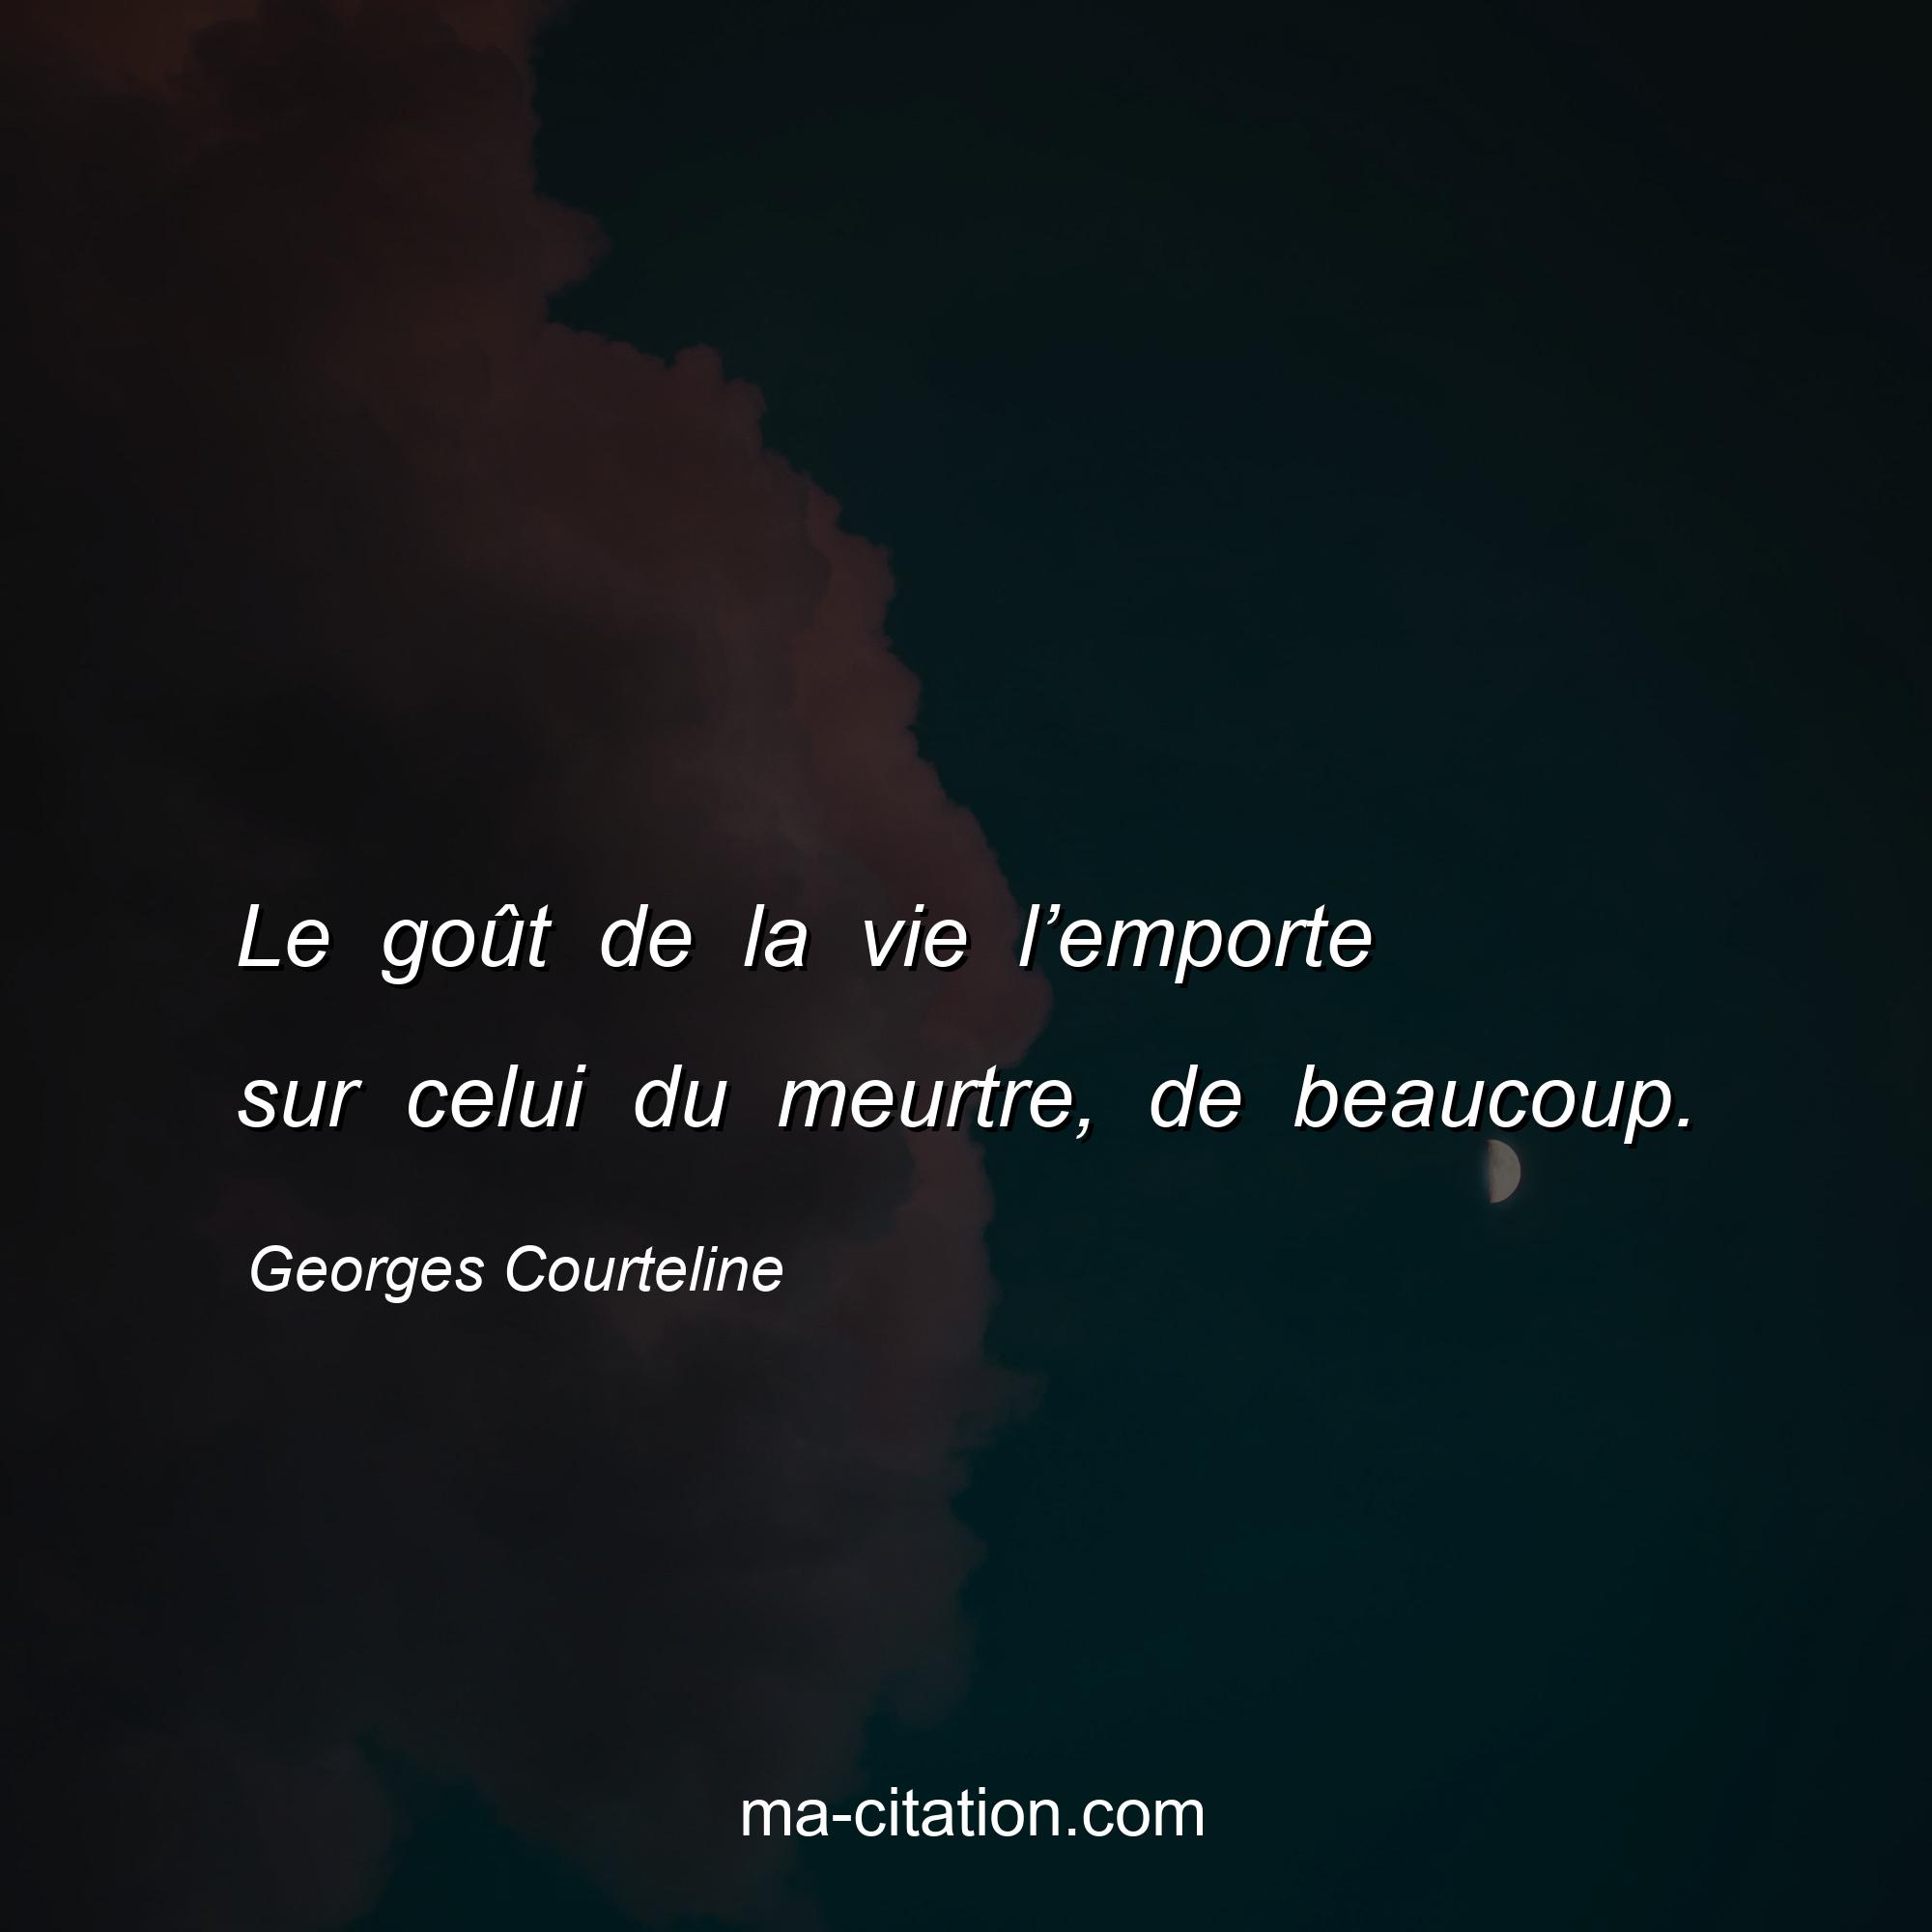 Georges Courteline : Le goût de la vie l’emporte sur celui du meurtre, de beaucoup.